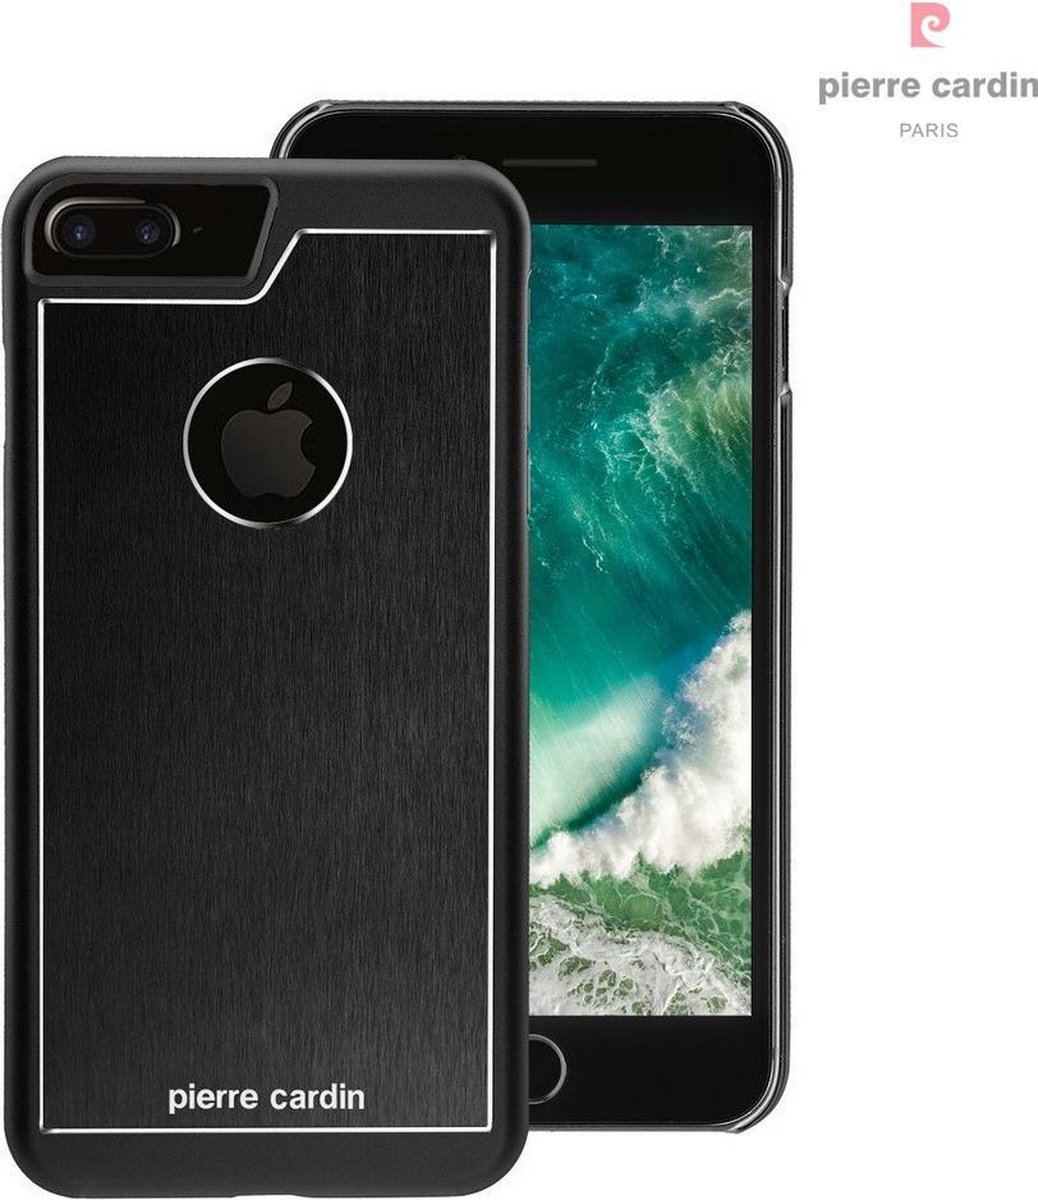 Grijs hoesje van Pierre Cardin - Backcover - Stijlvol - Leer - voor iPhone 7-8 Plus - Luxe cover